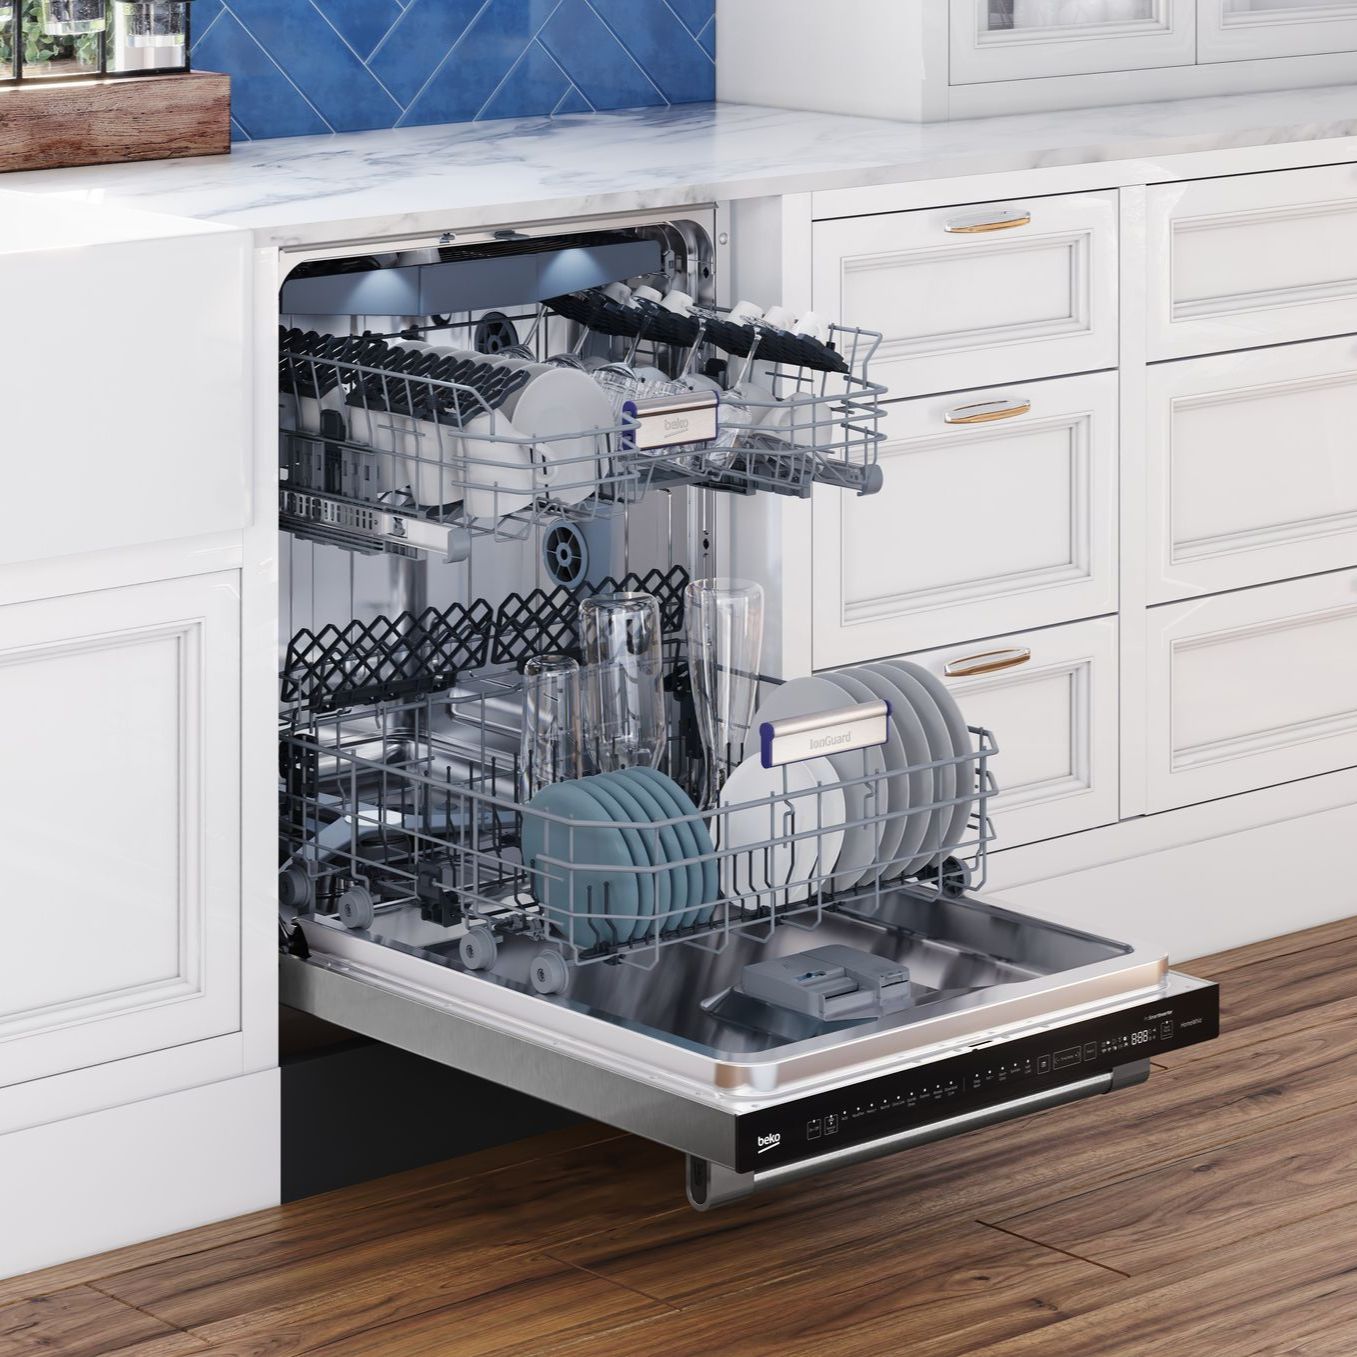 new sustainability-focused dishwasher by Beko